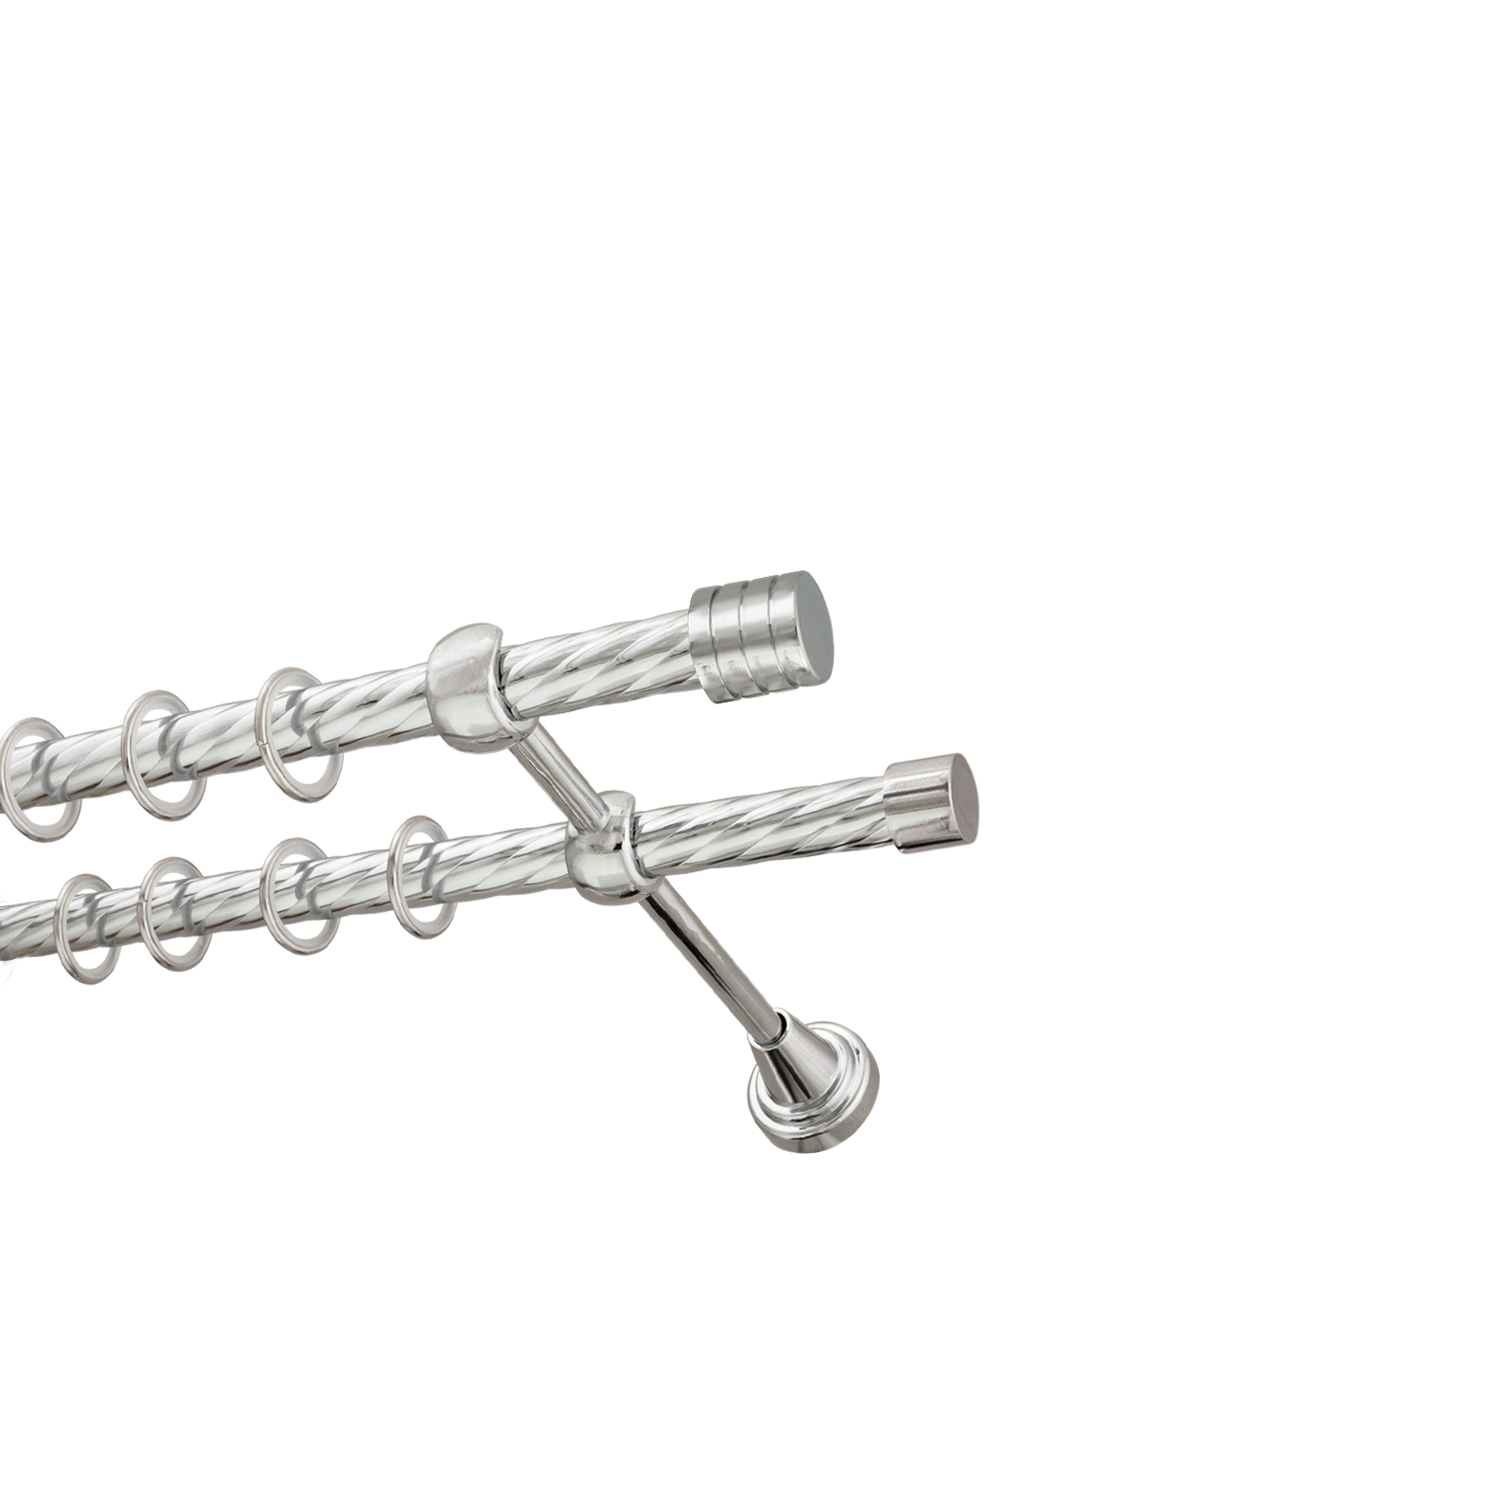 Металлический карниз для штор Подиум, двухрядный 16/16 мм, серебро, витая штанга, длина 240 см